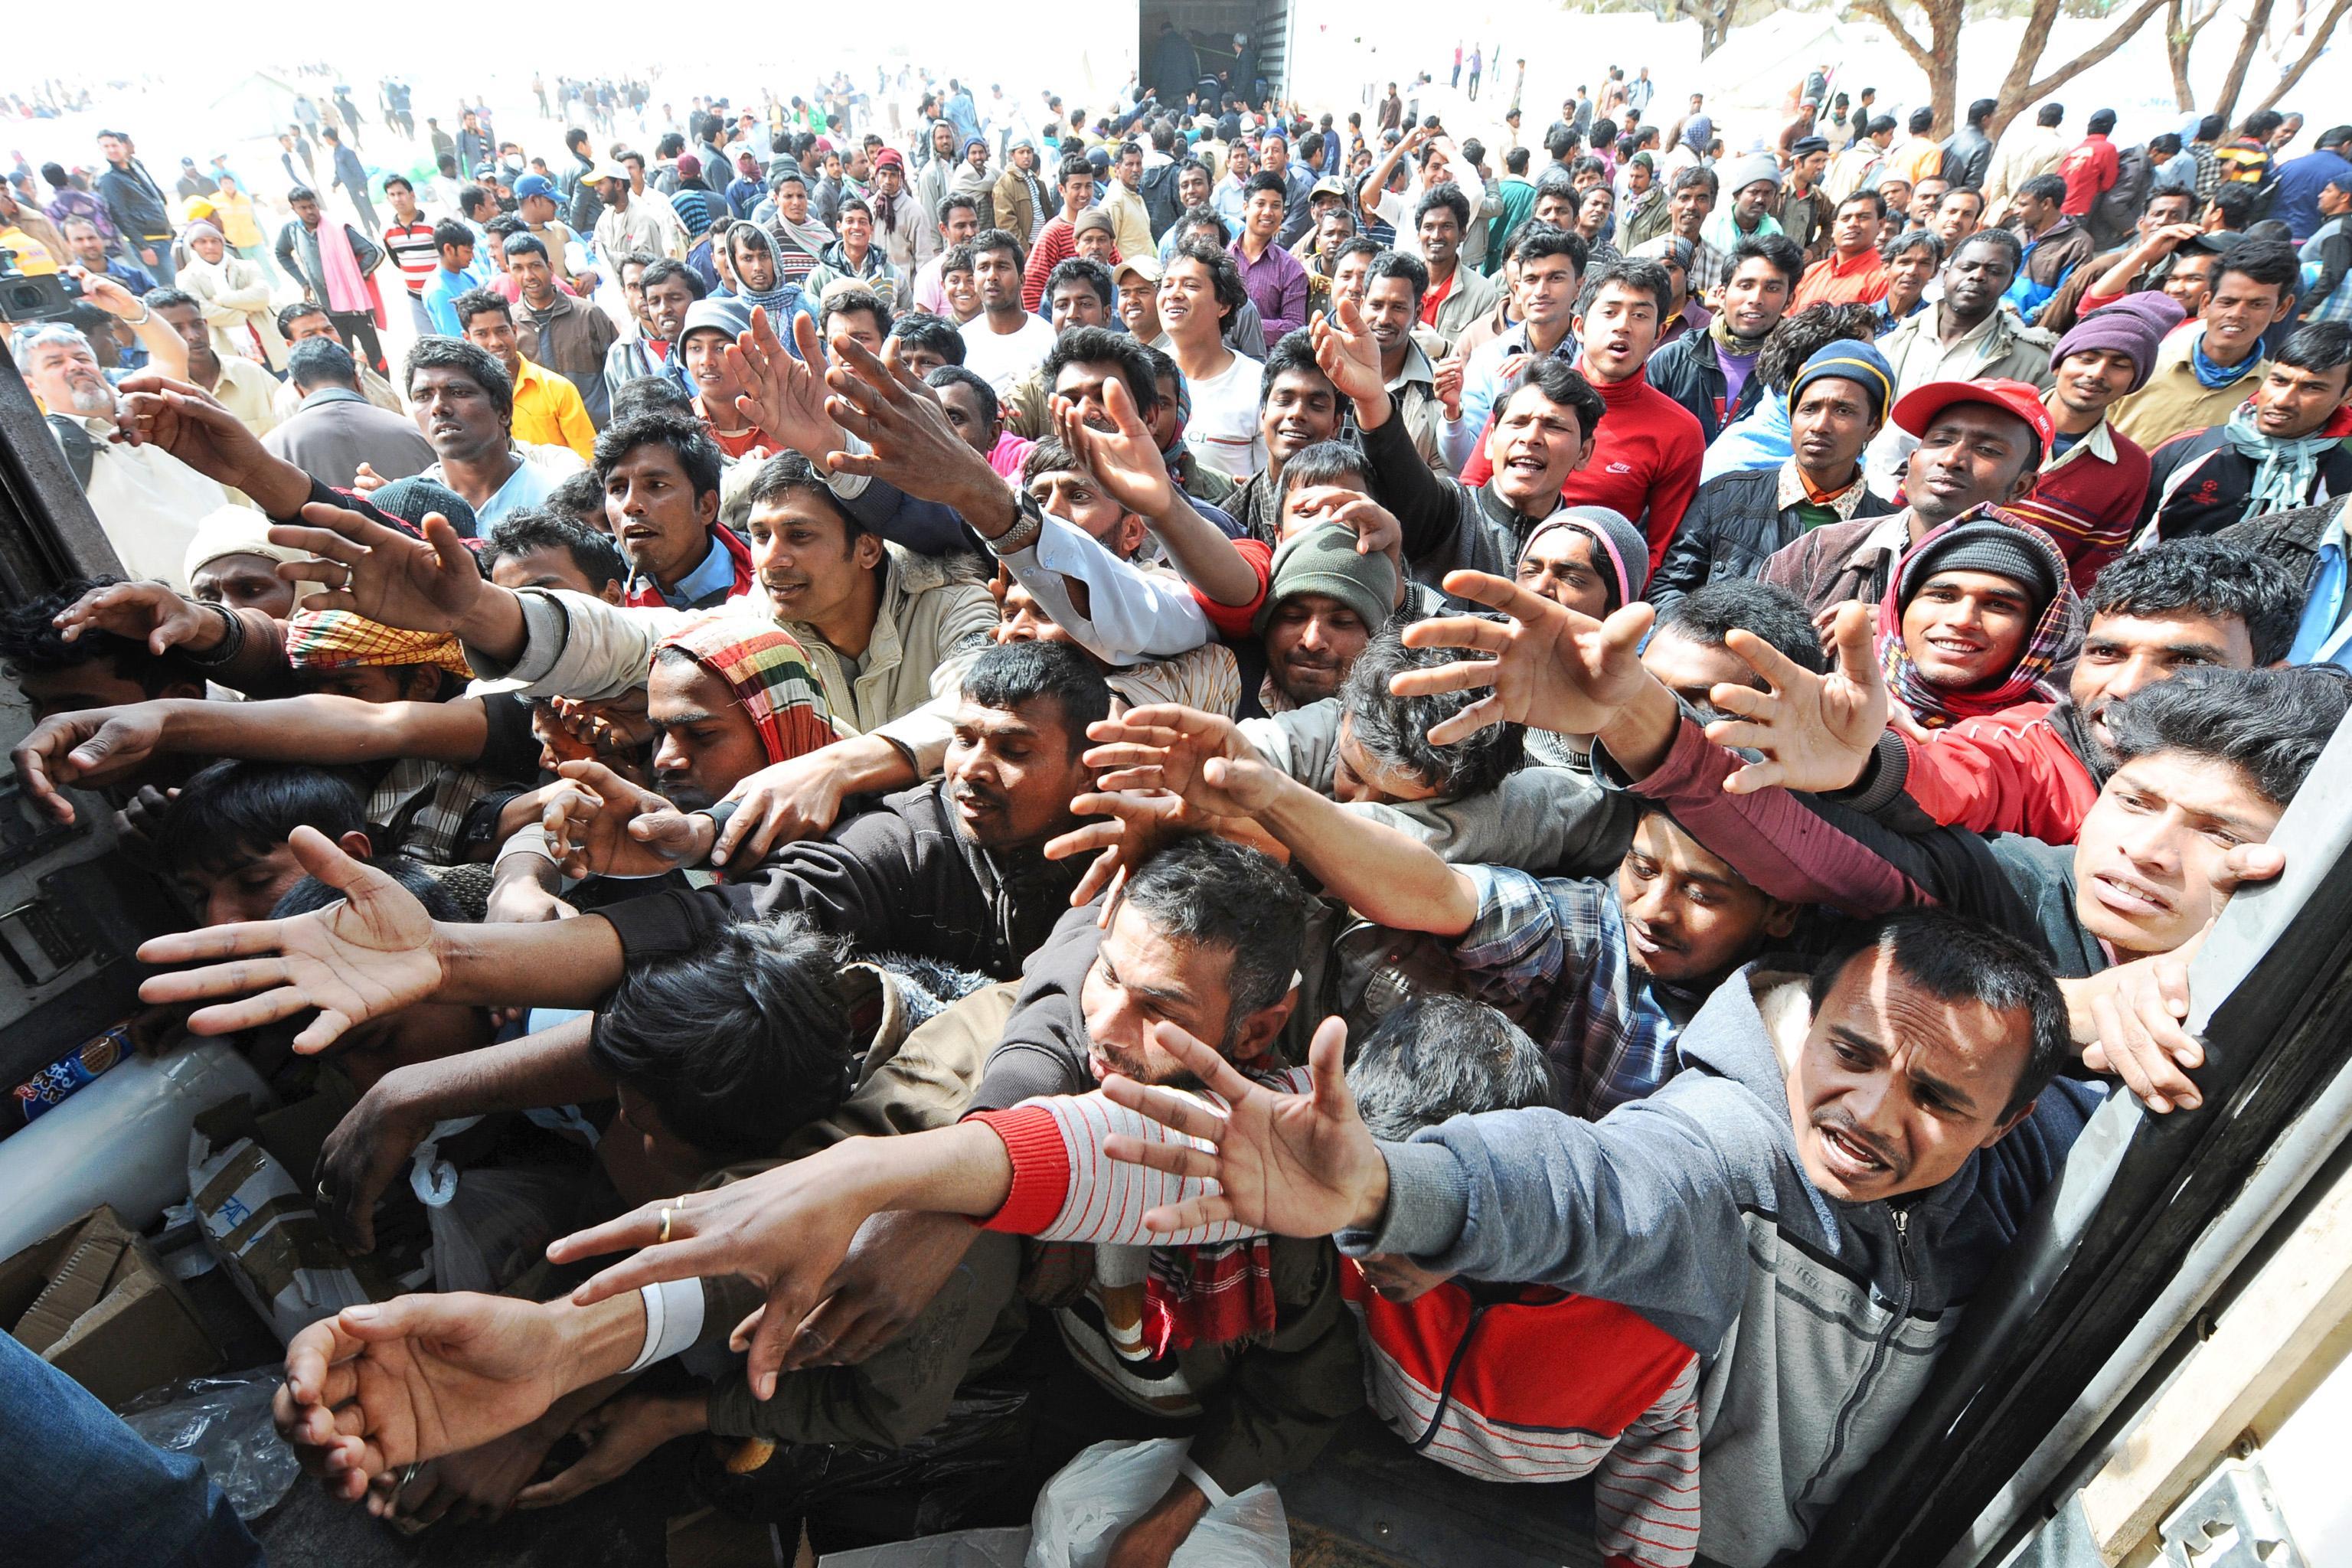 Группа эмигранты. Мигранты в Европе. Толпа мигрантов. Европейский миграционный кризис. Массовая миграция.